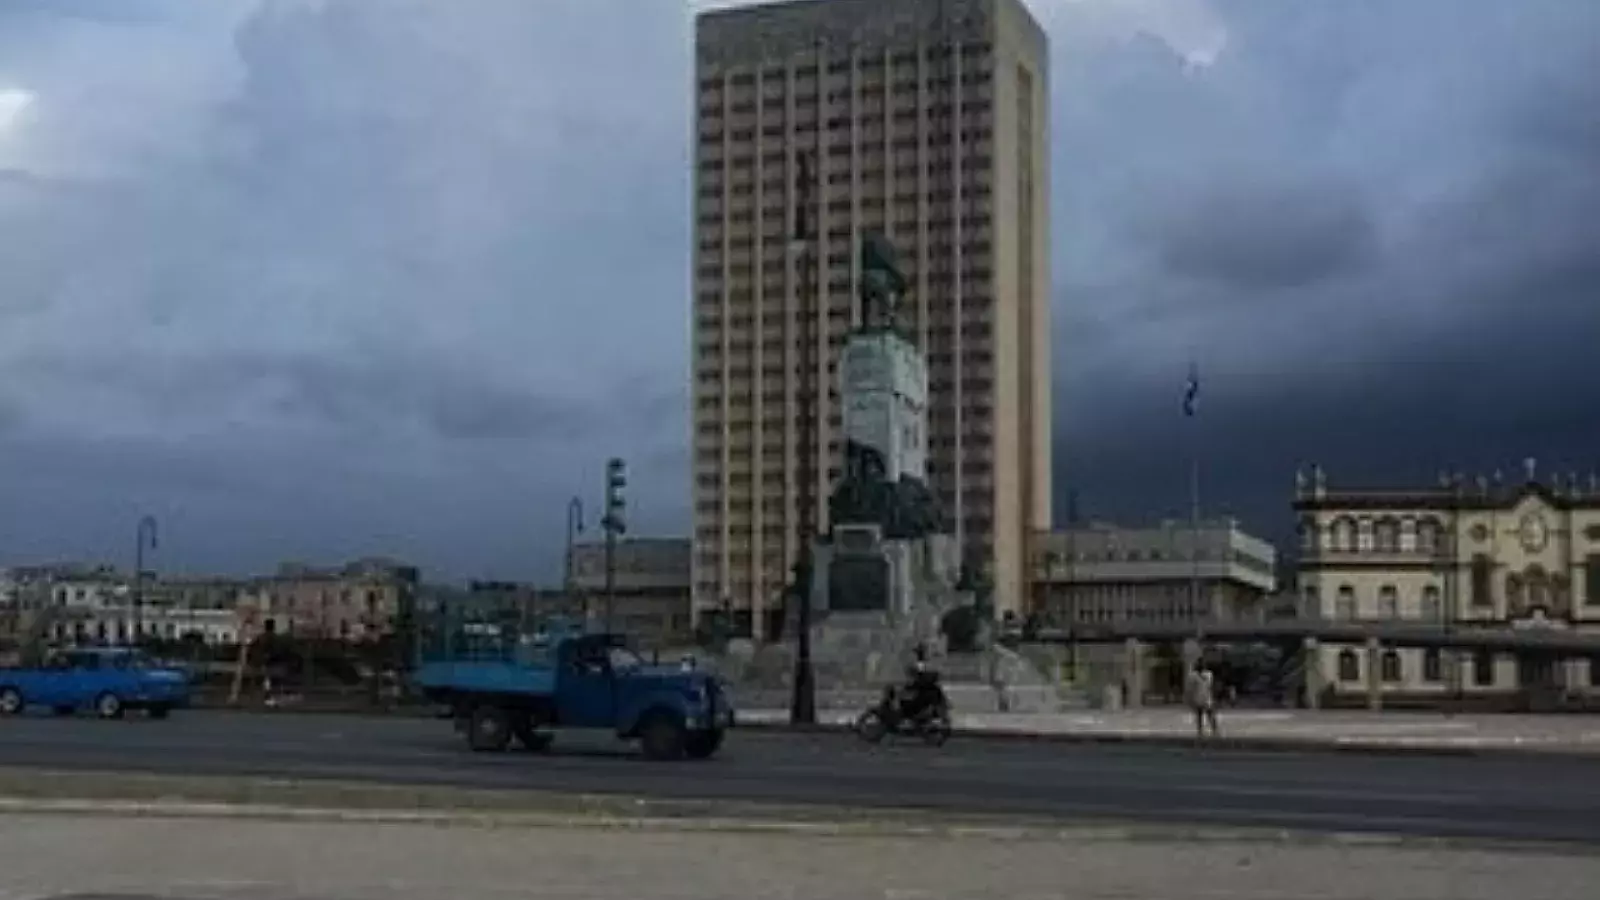 Hospital "Hermanos Ameijeiras" en La Habana